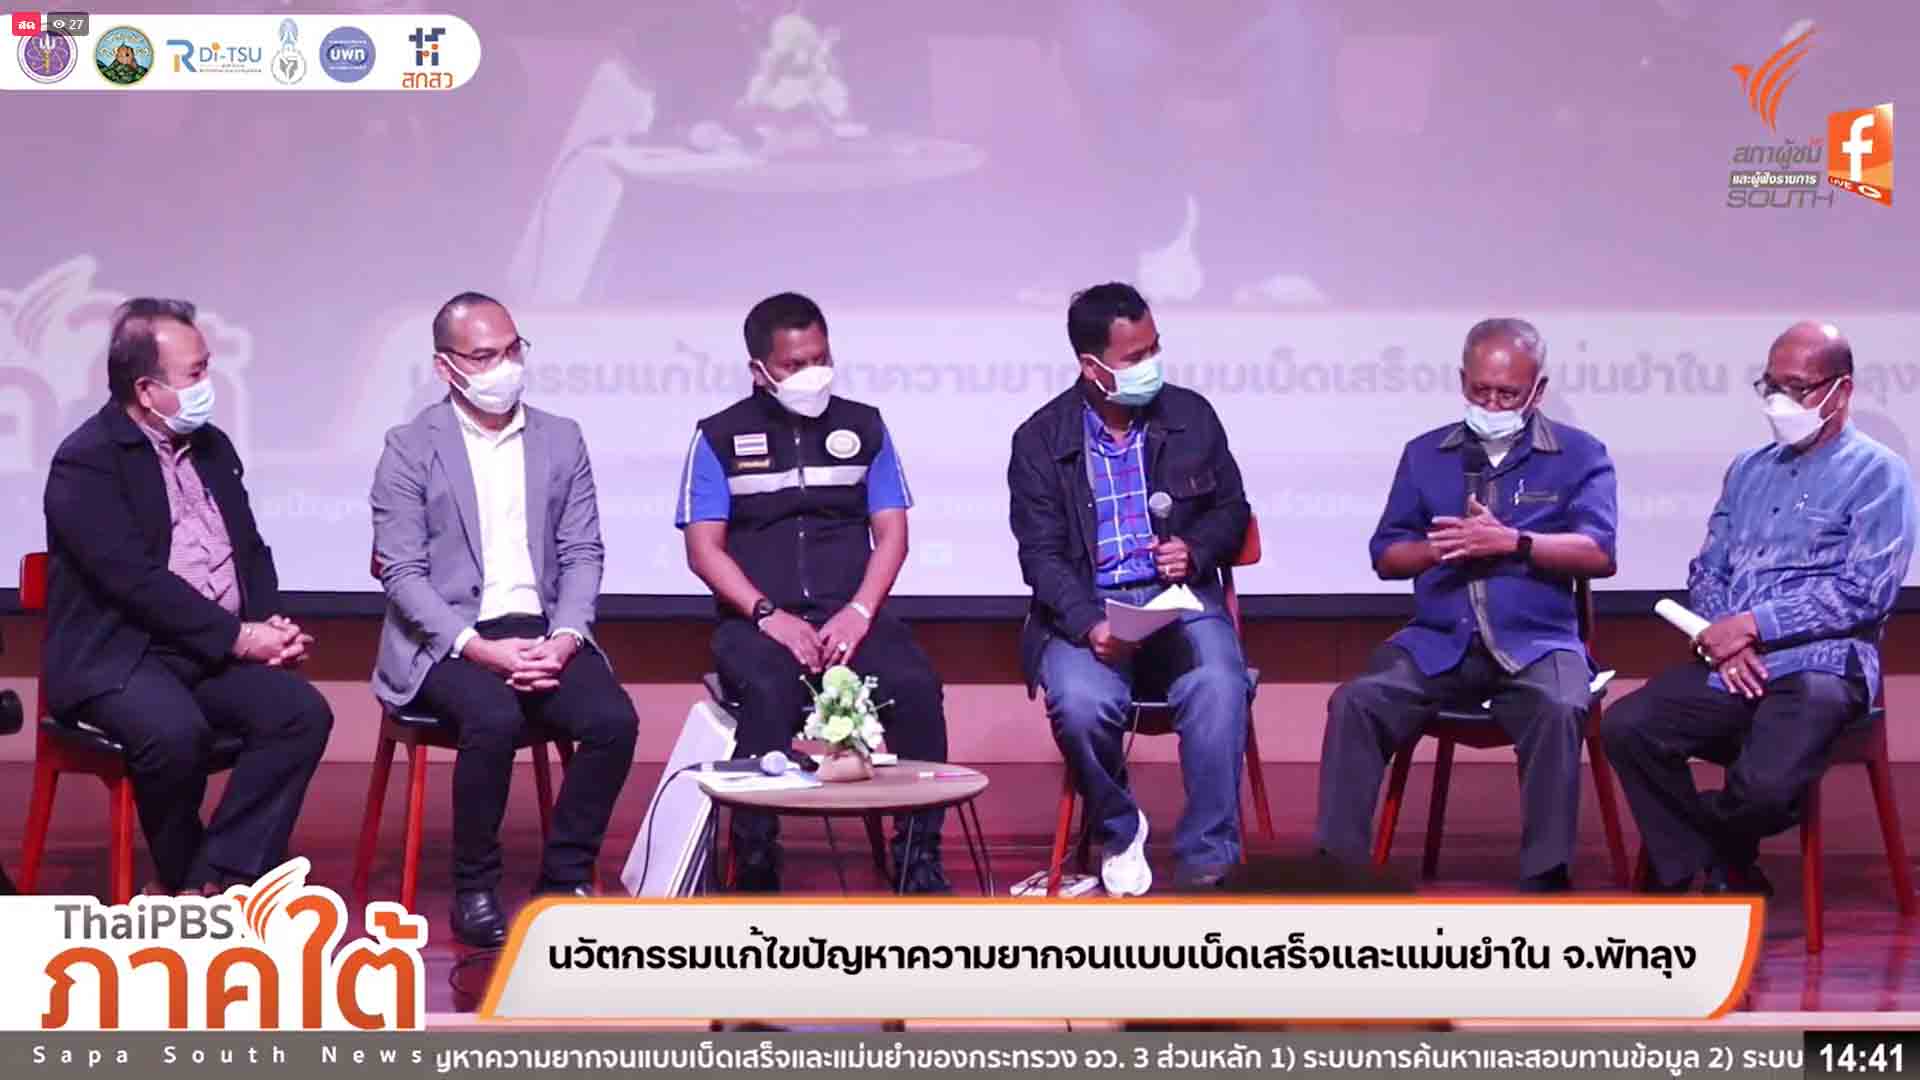 ม.ทักษิณ ร่วมภาคีเครือข่ายและไทยพีบีเอส เปิดเวทีสื่อสาธารณะ ระดมความคิดพัฒนาพัทลุงโมเดล